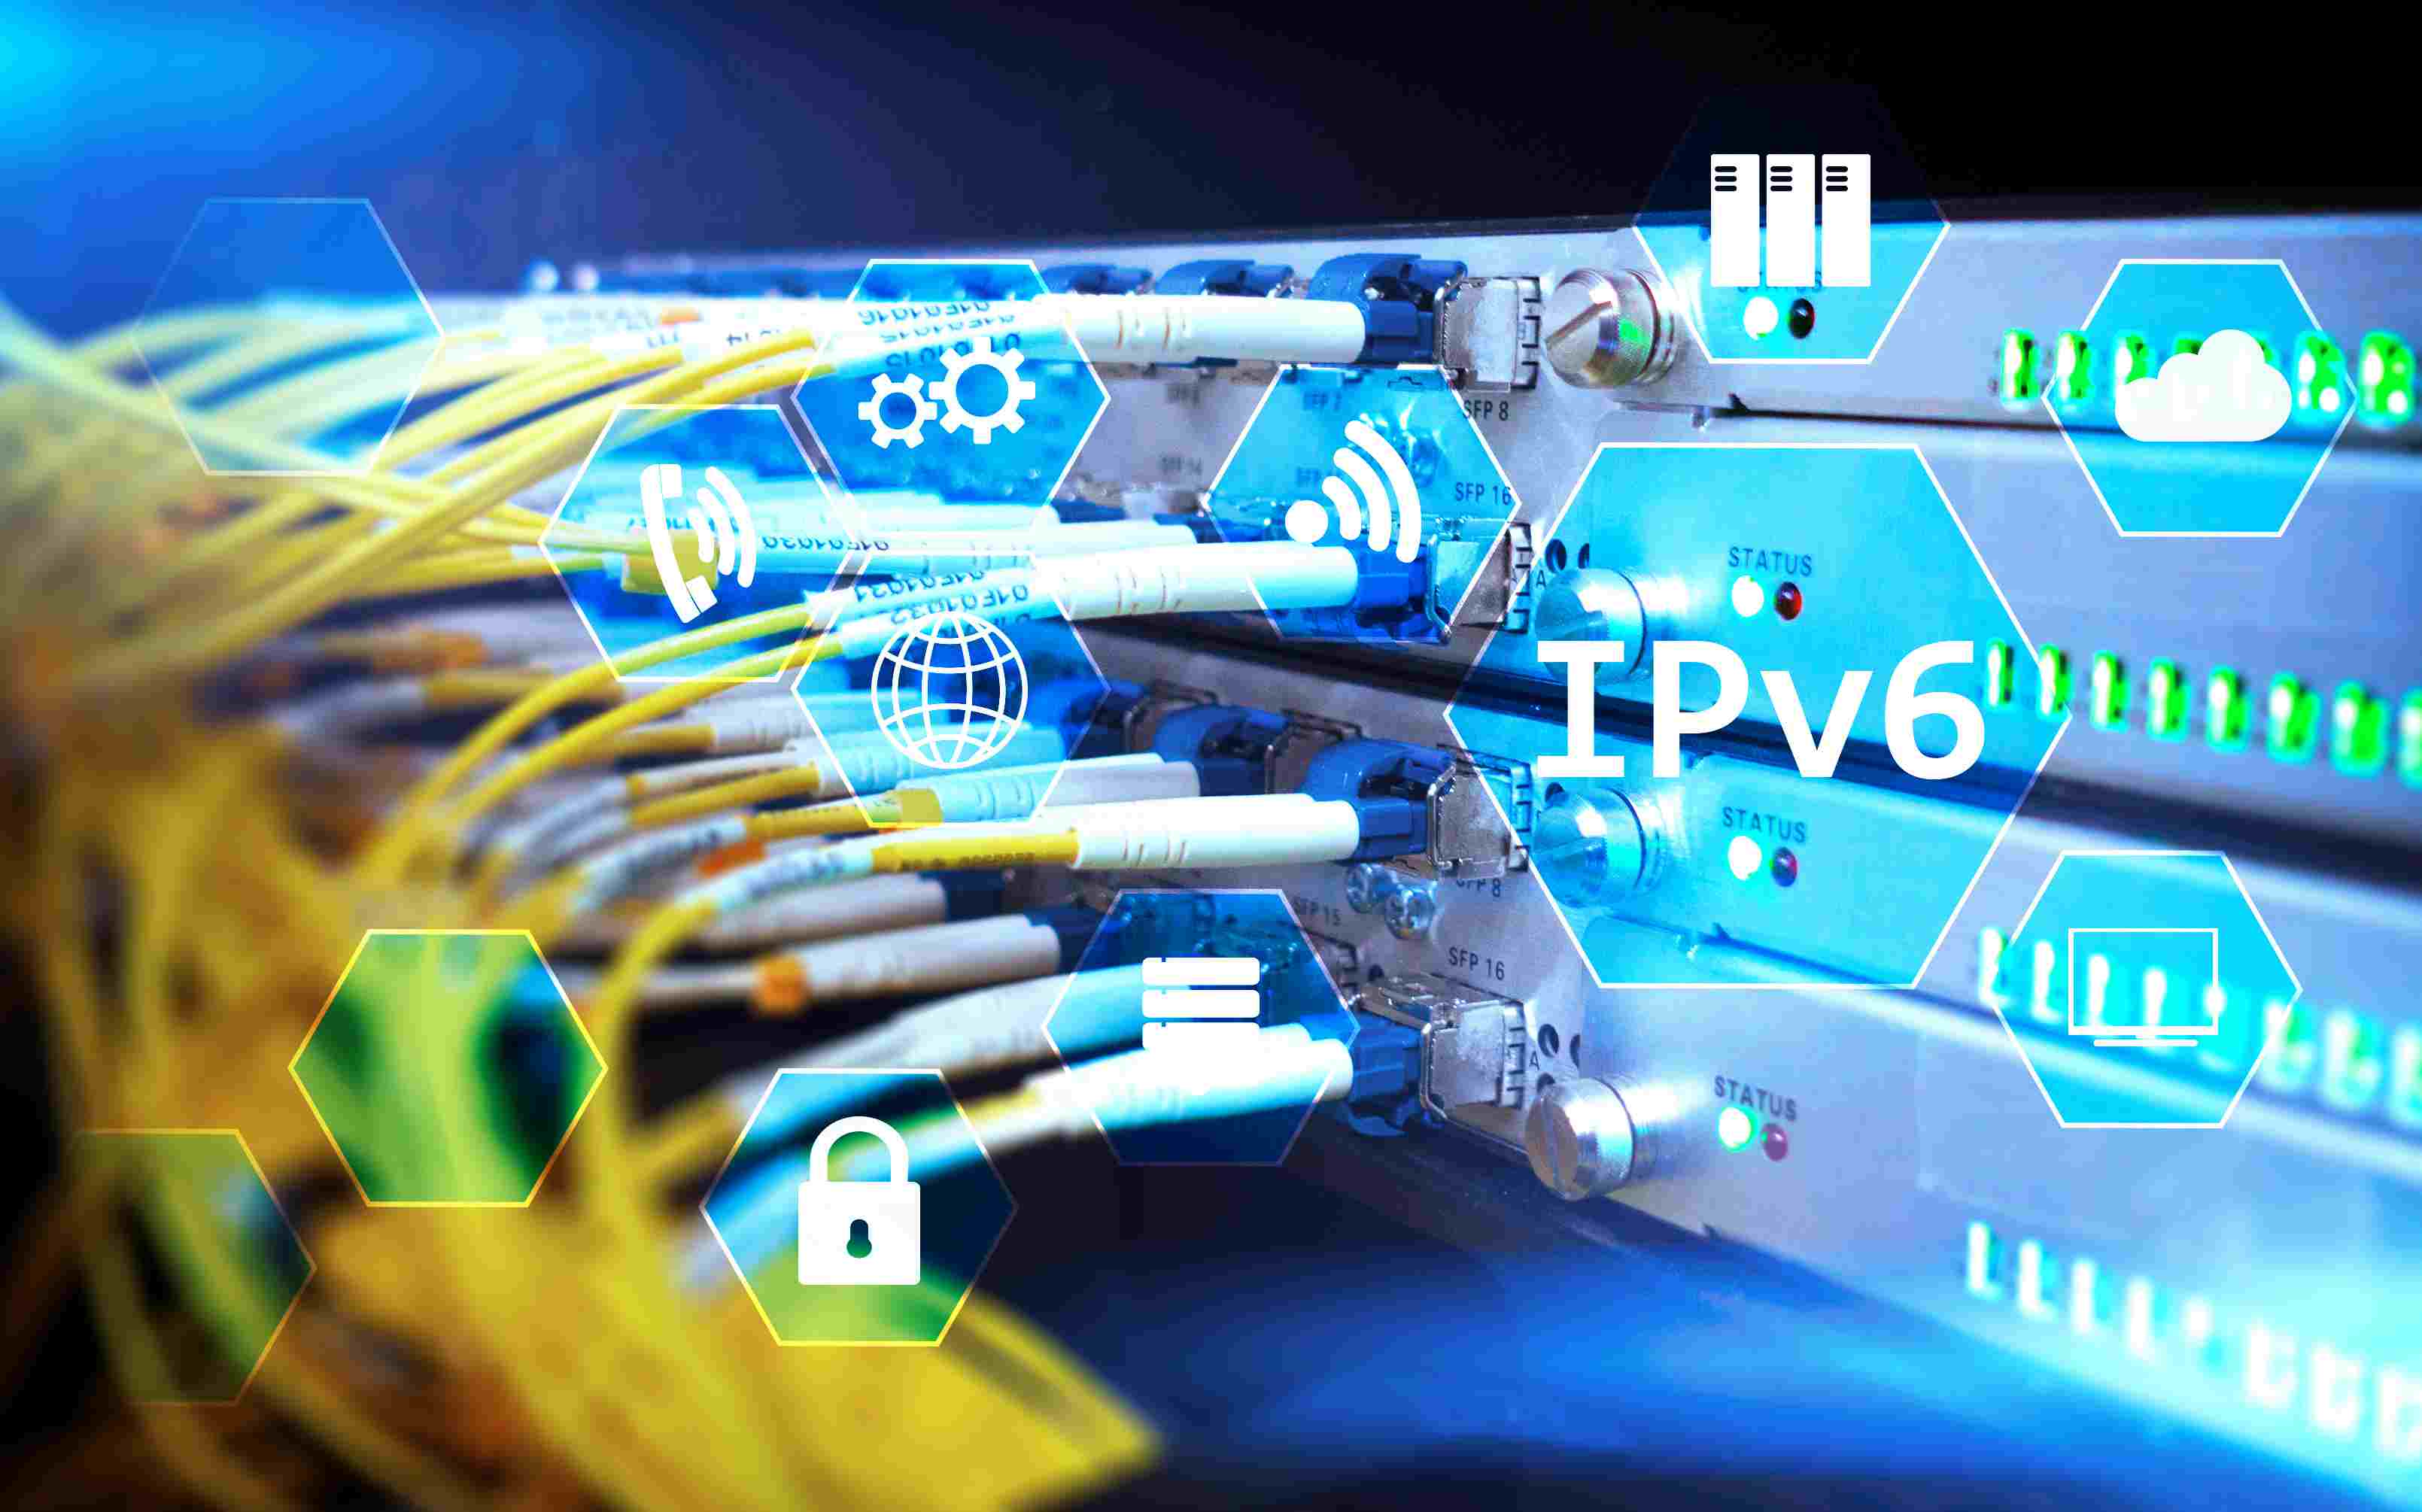 Cabos conectados a servidores com IPv6 sobreposto a ele